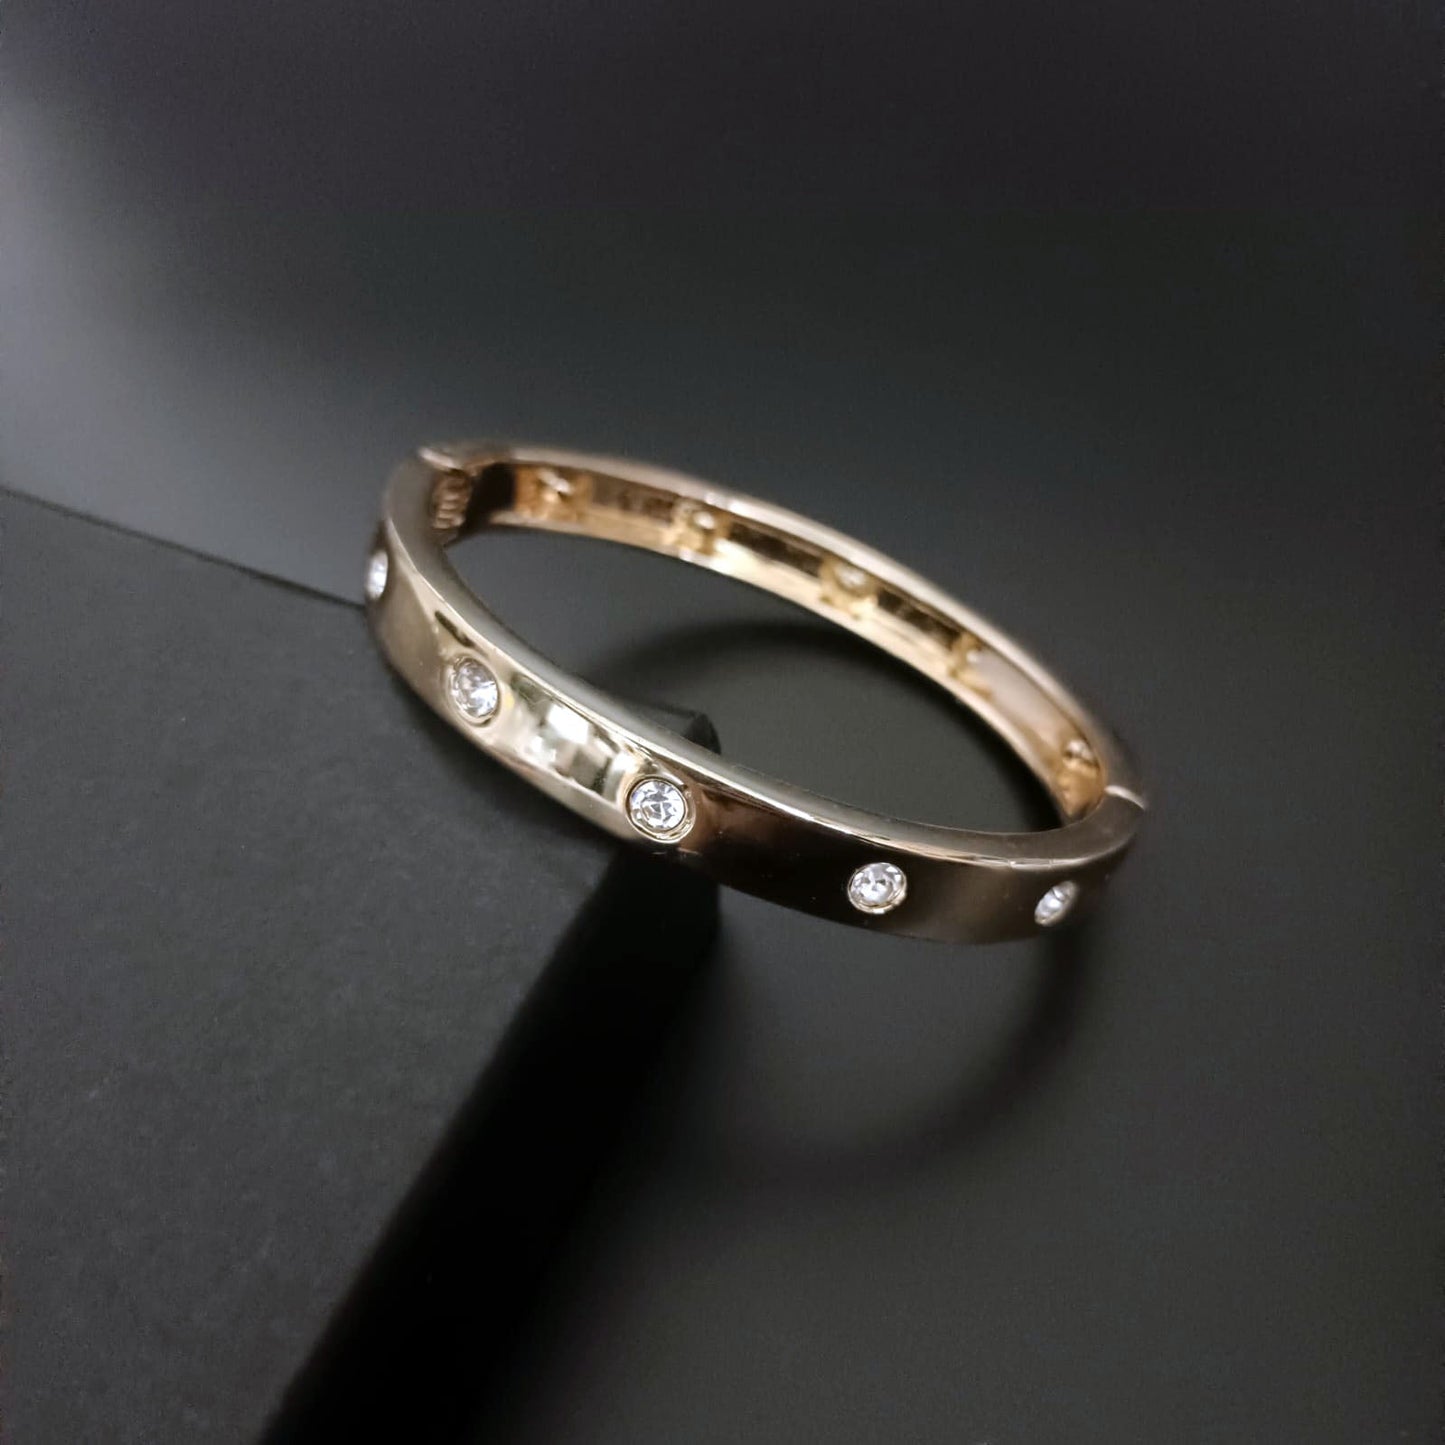 New Gold-plated Bracelet For Men Women